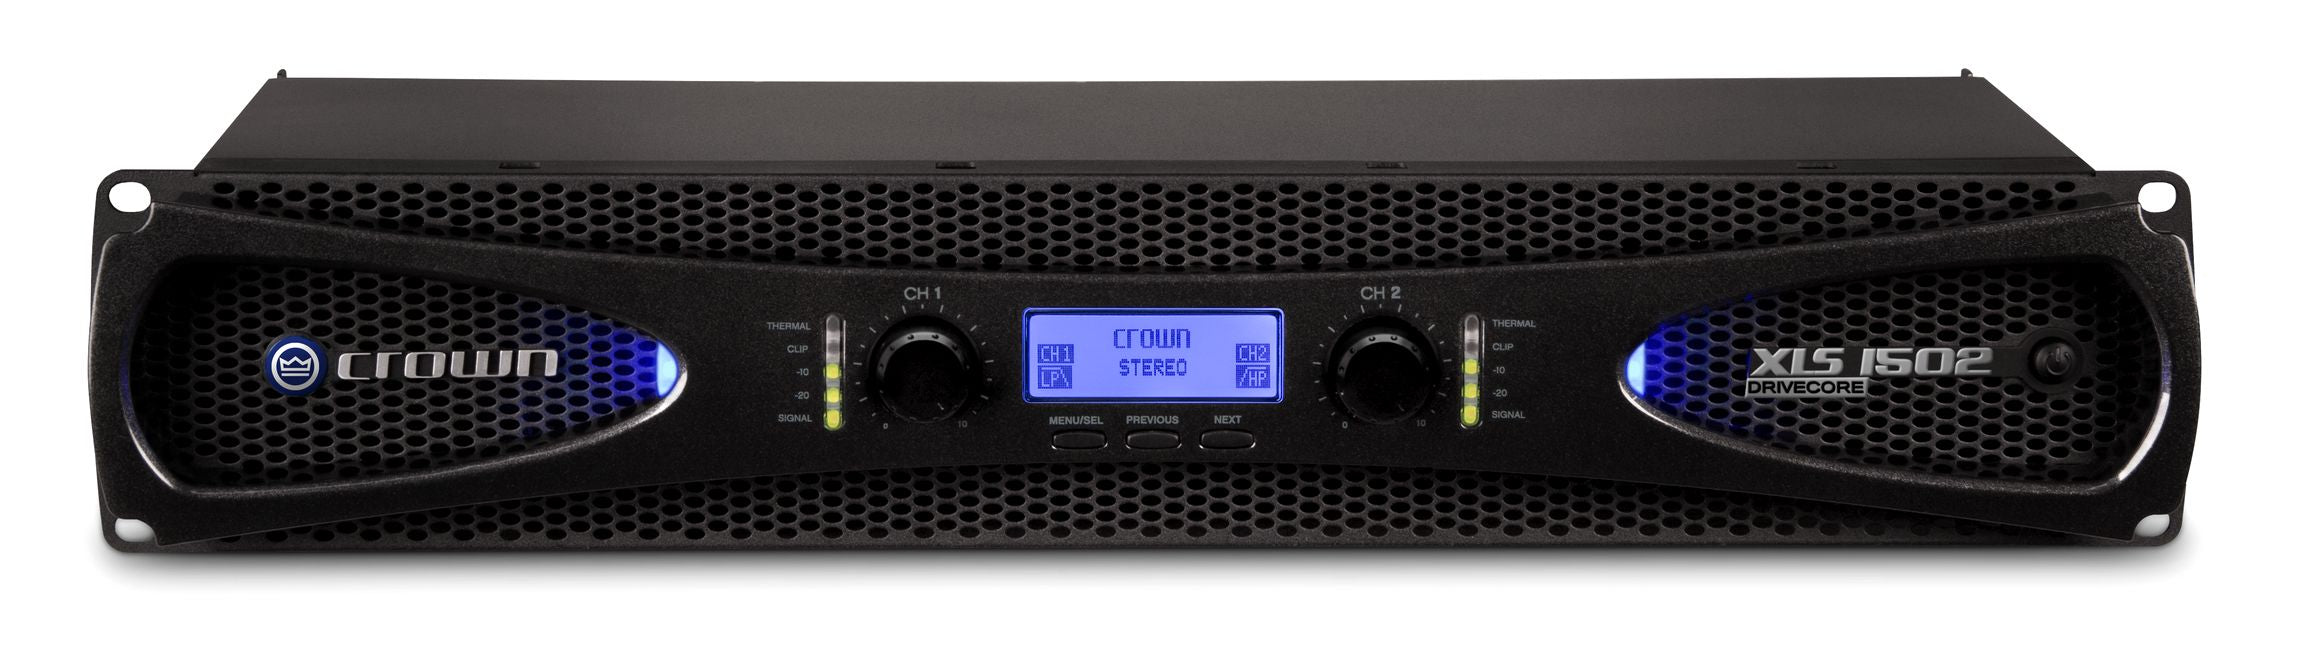 Crown Audio XLS1502 Drivecore - Power Amps - Professional Audio Design, Inc